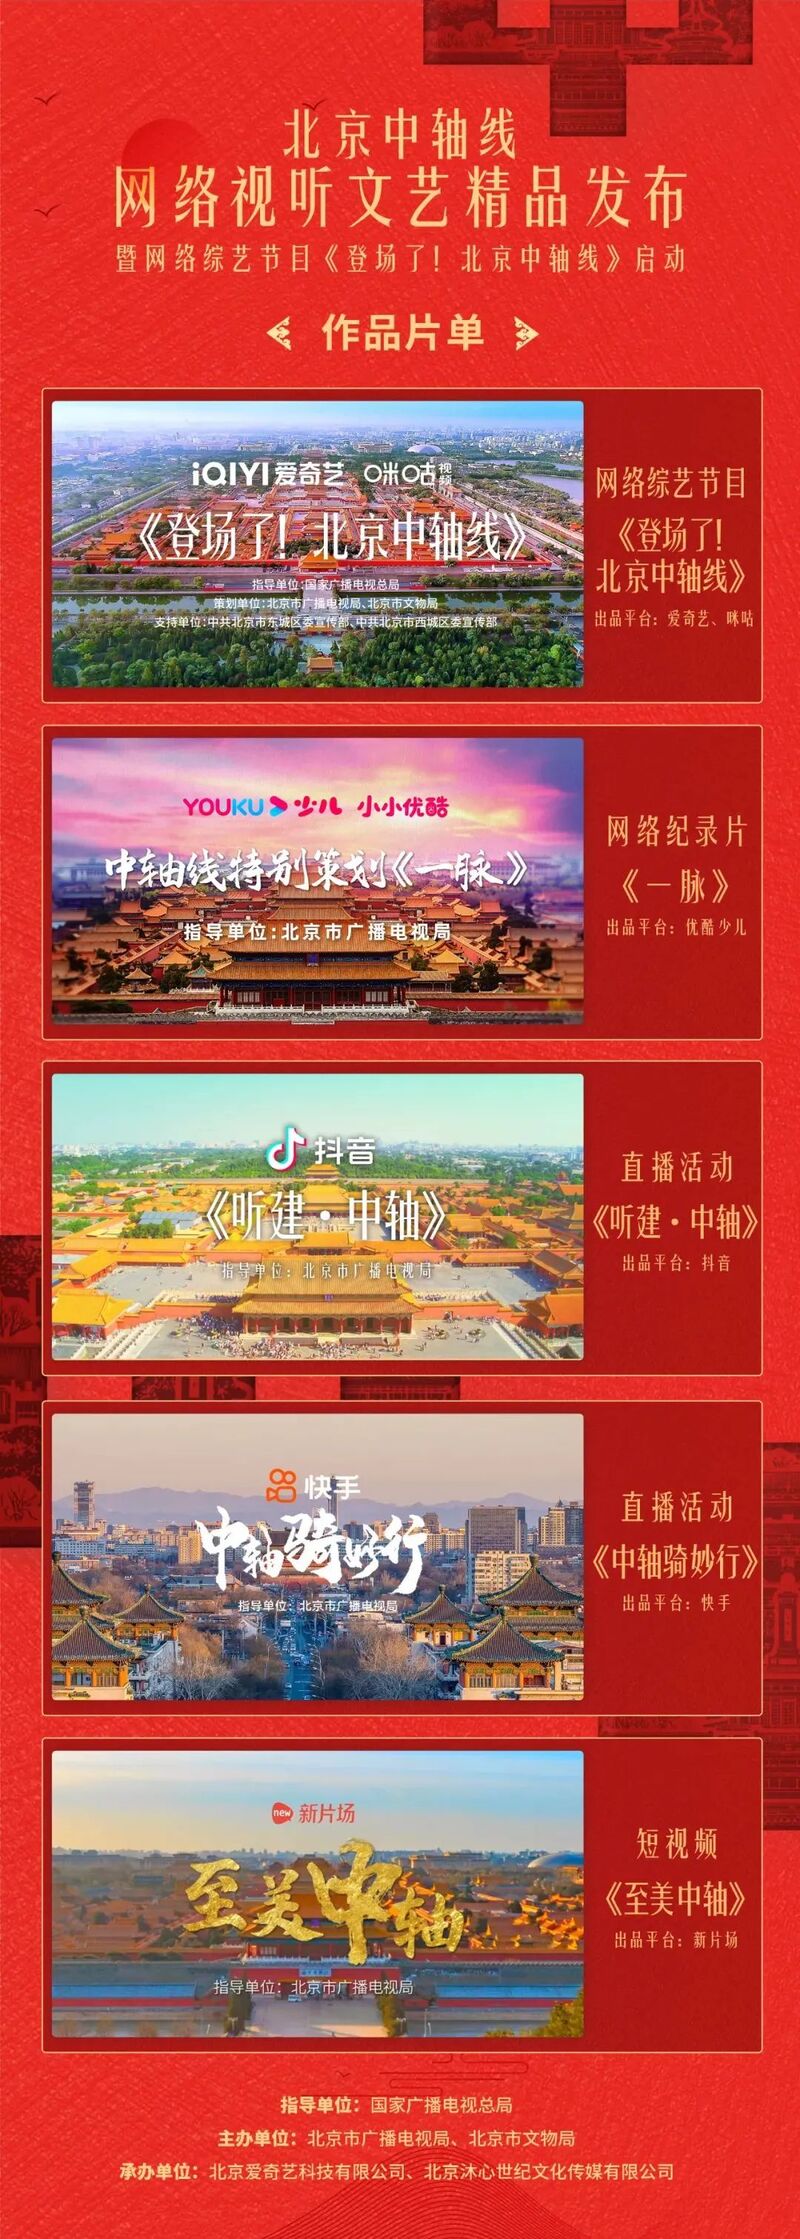 当北京中轴线与网络视听相遇,呈现出别样的“文艺”光彩!